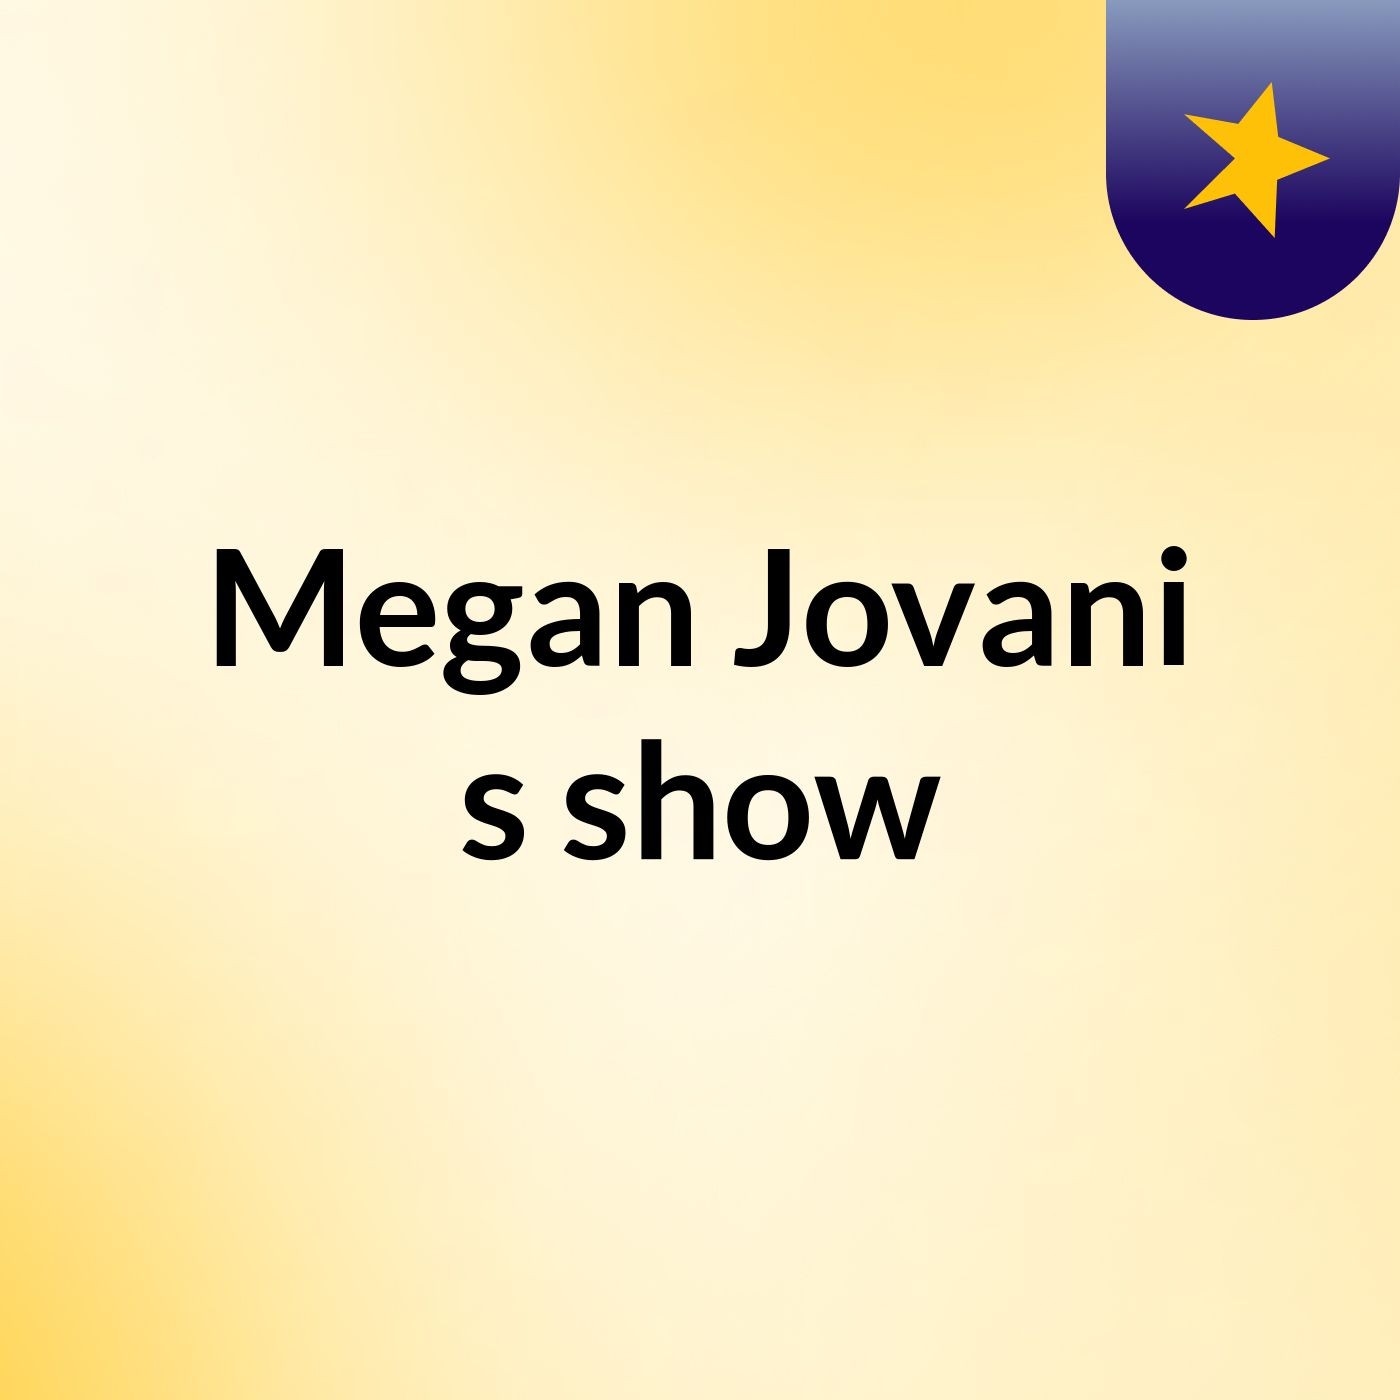 Megan Jovani's show